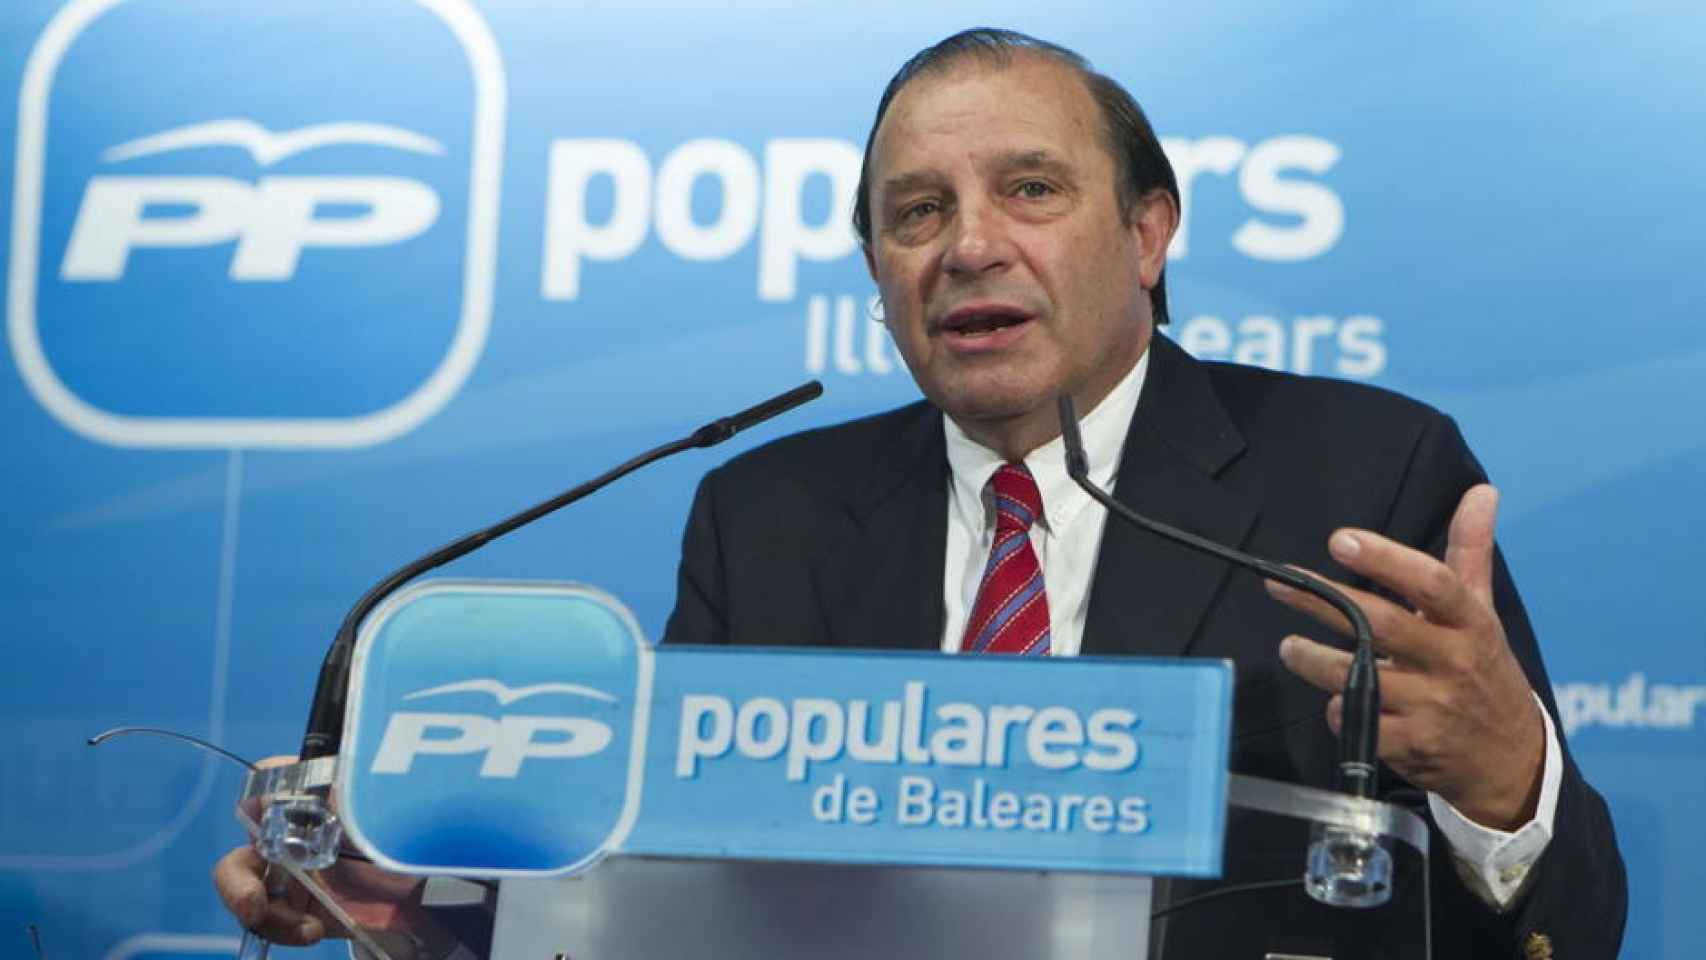 El diputado del PP Vicente Martínez Pujalte